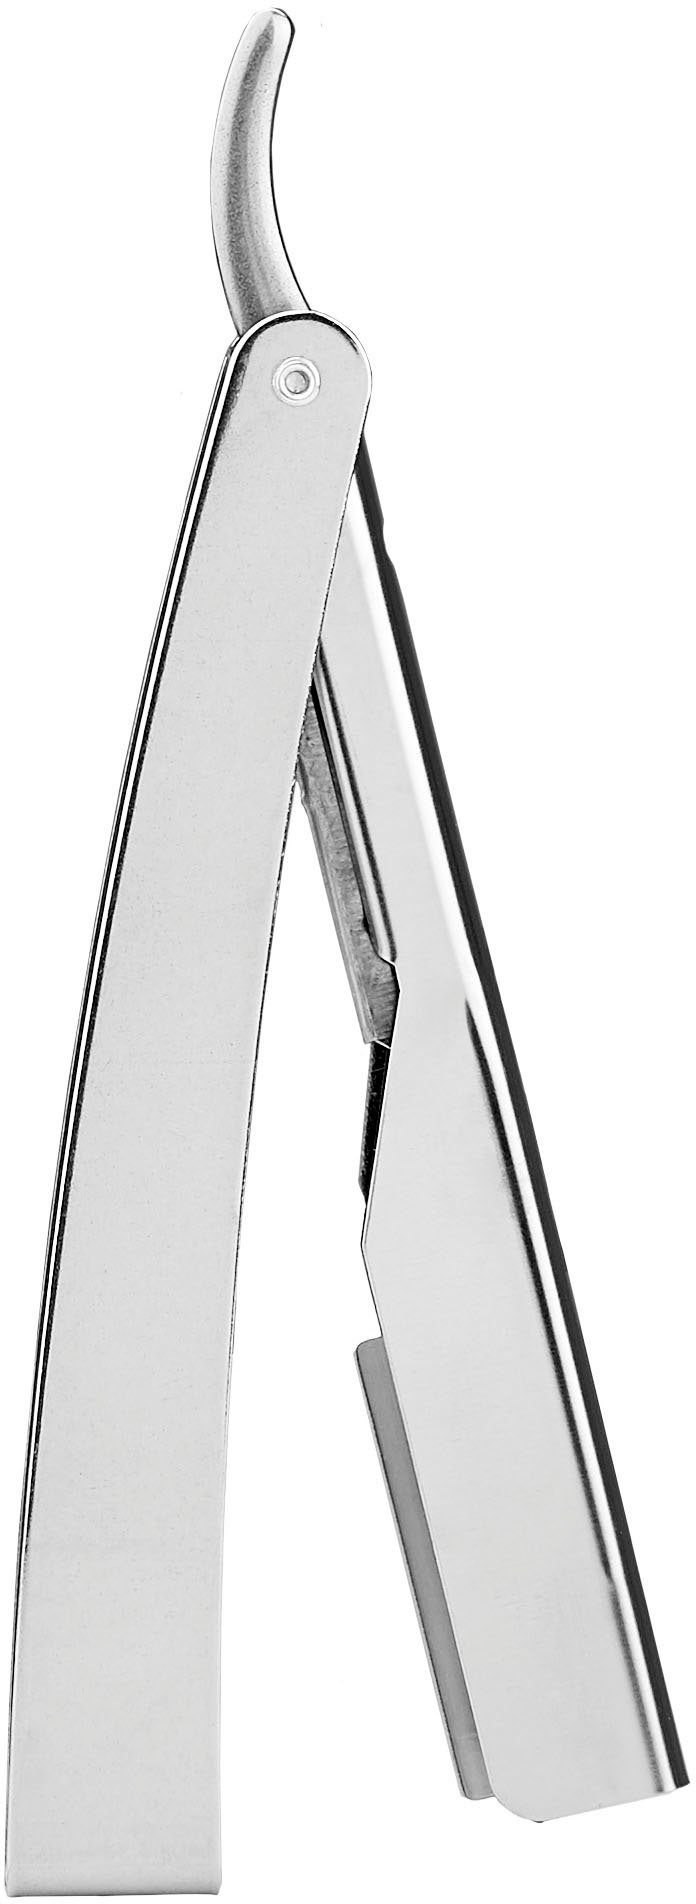 Günstiger Verkauf! Rasiermesser 1955 praktischem Klappgriff FRIPAC Rasiermesser silberfarben, mit